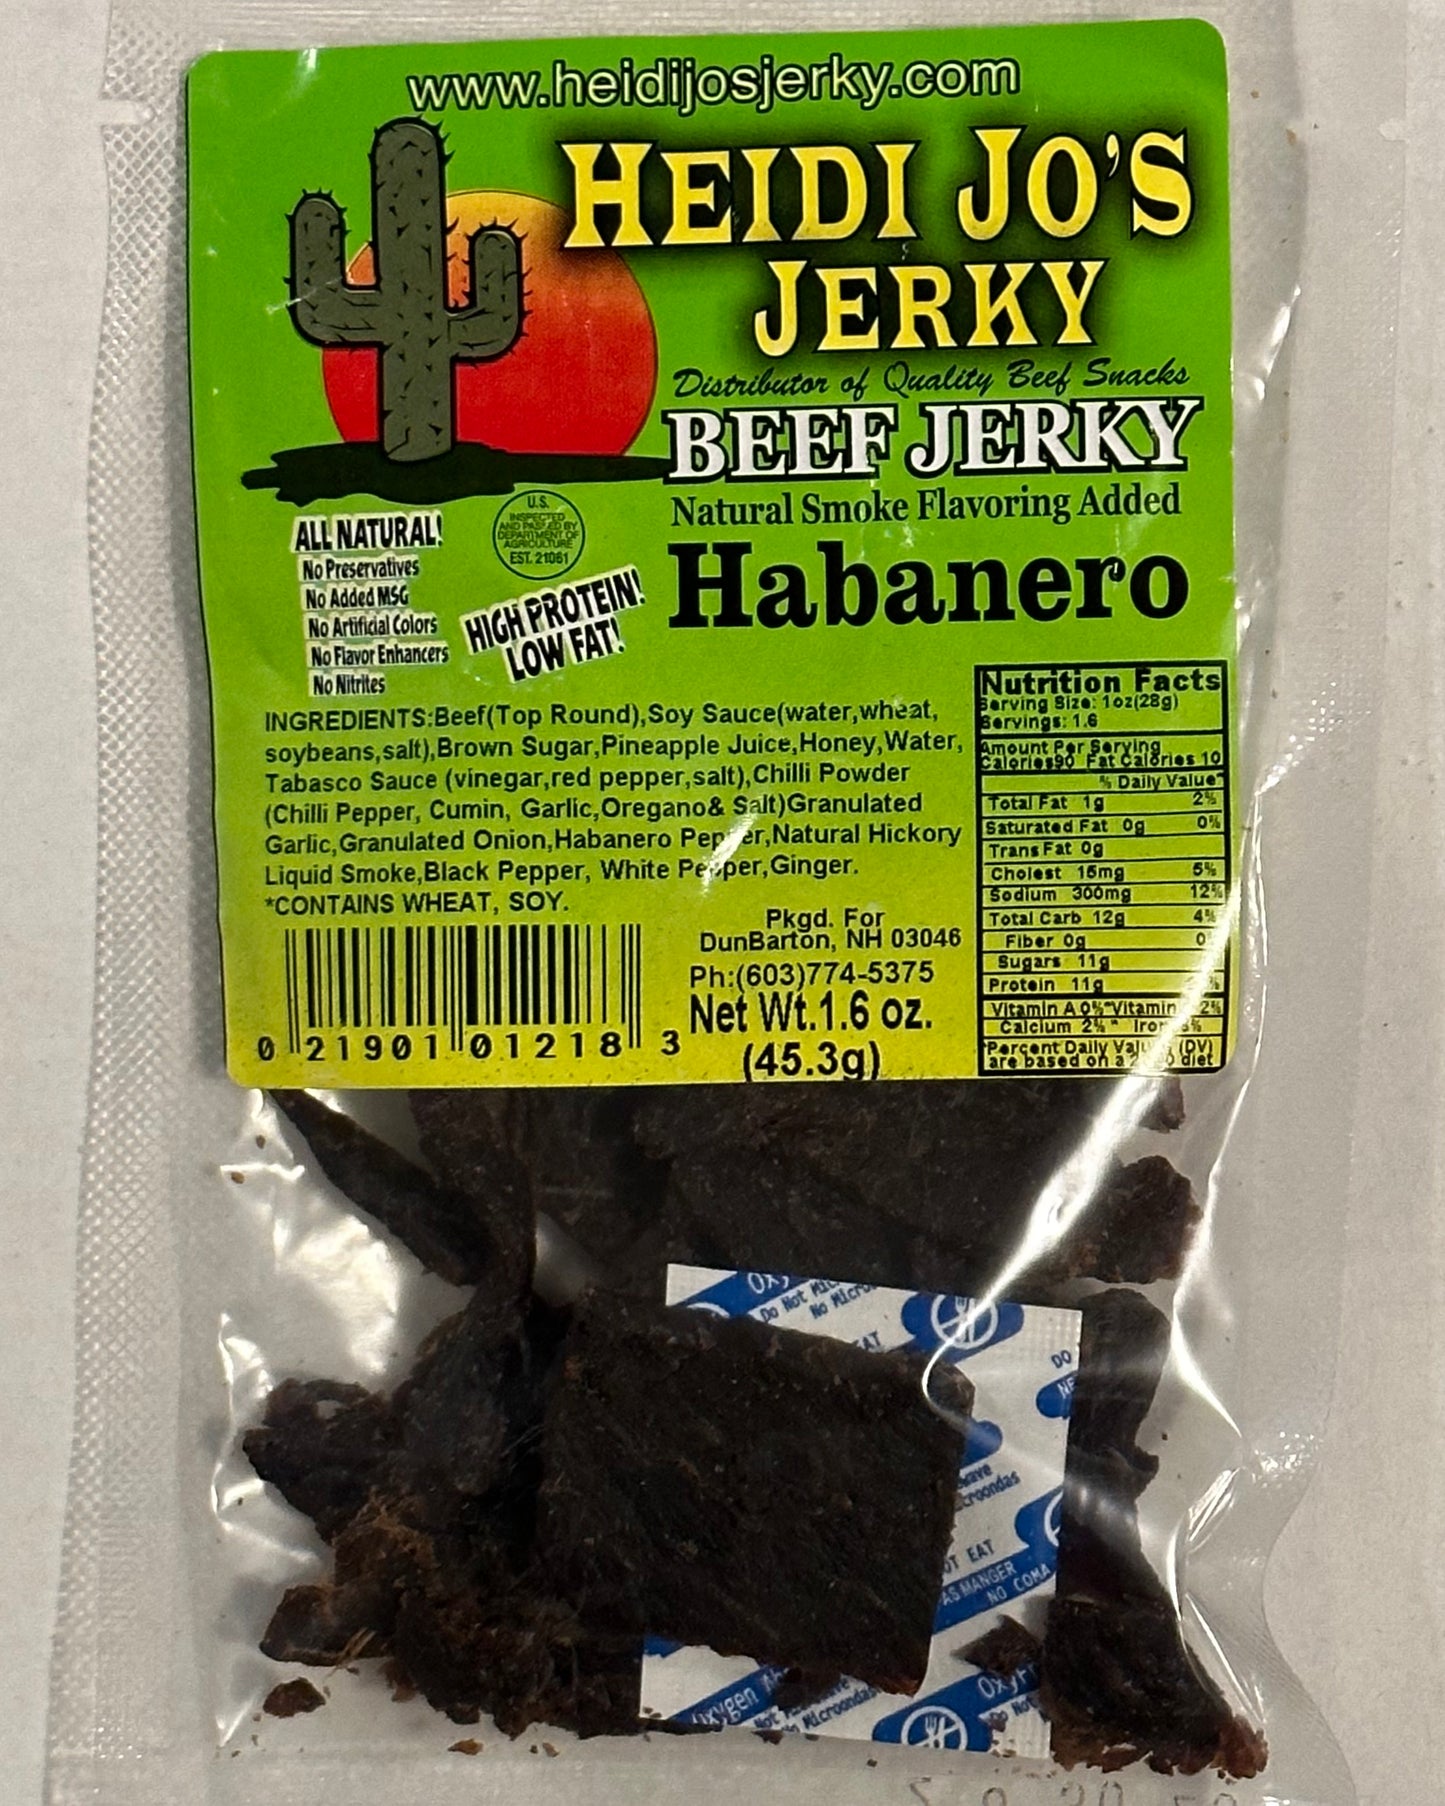 Habanero Beef Jerky